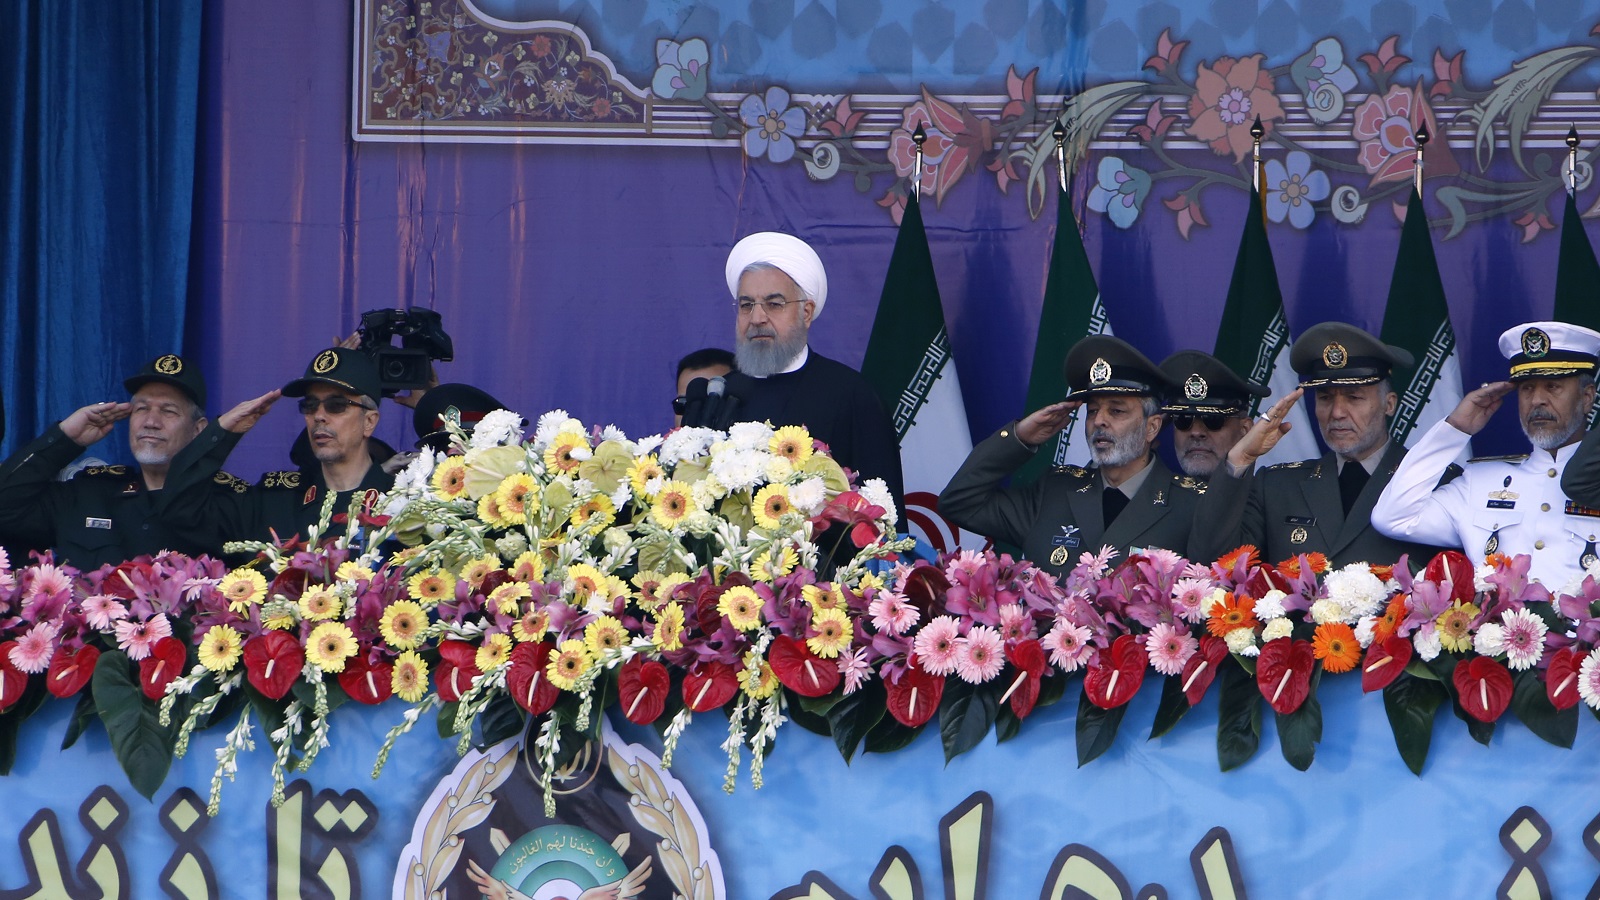 روحاني يهدد ترامب بـ"عواقب وخيمة"